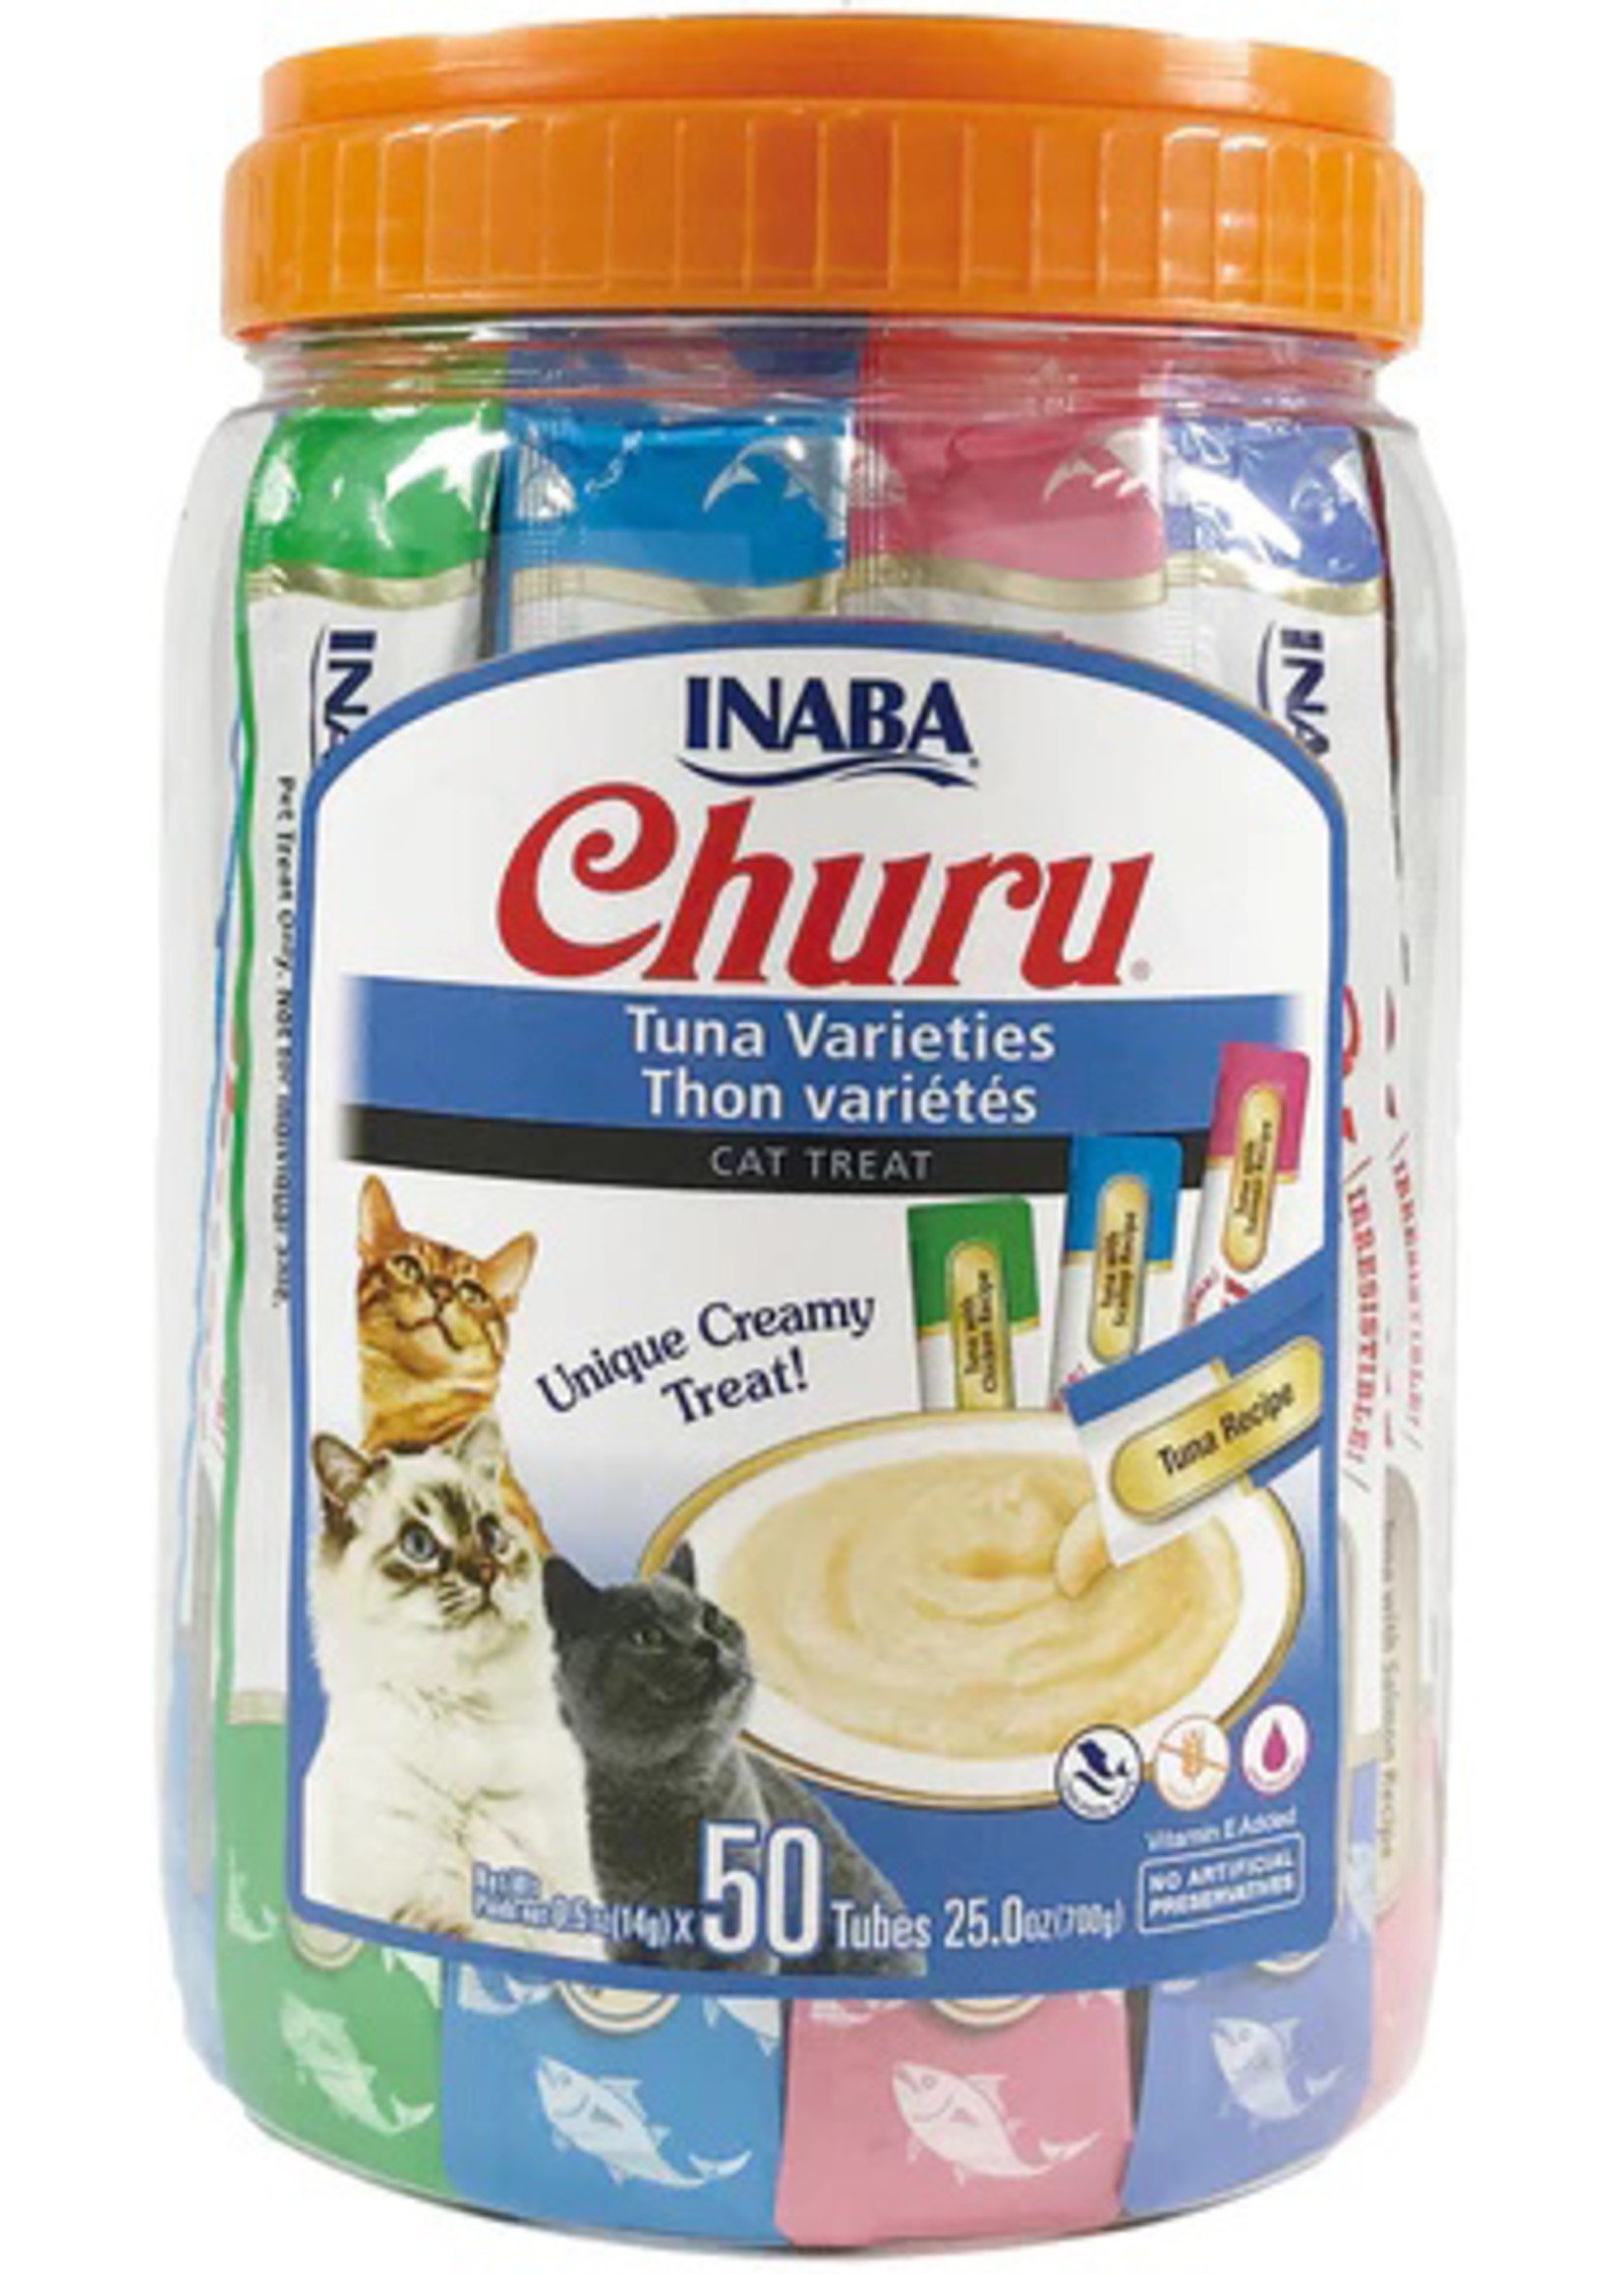 Inaba Churu Creamy Cat Treats Tuna Variety